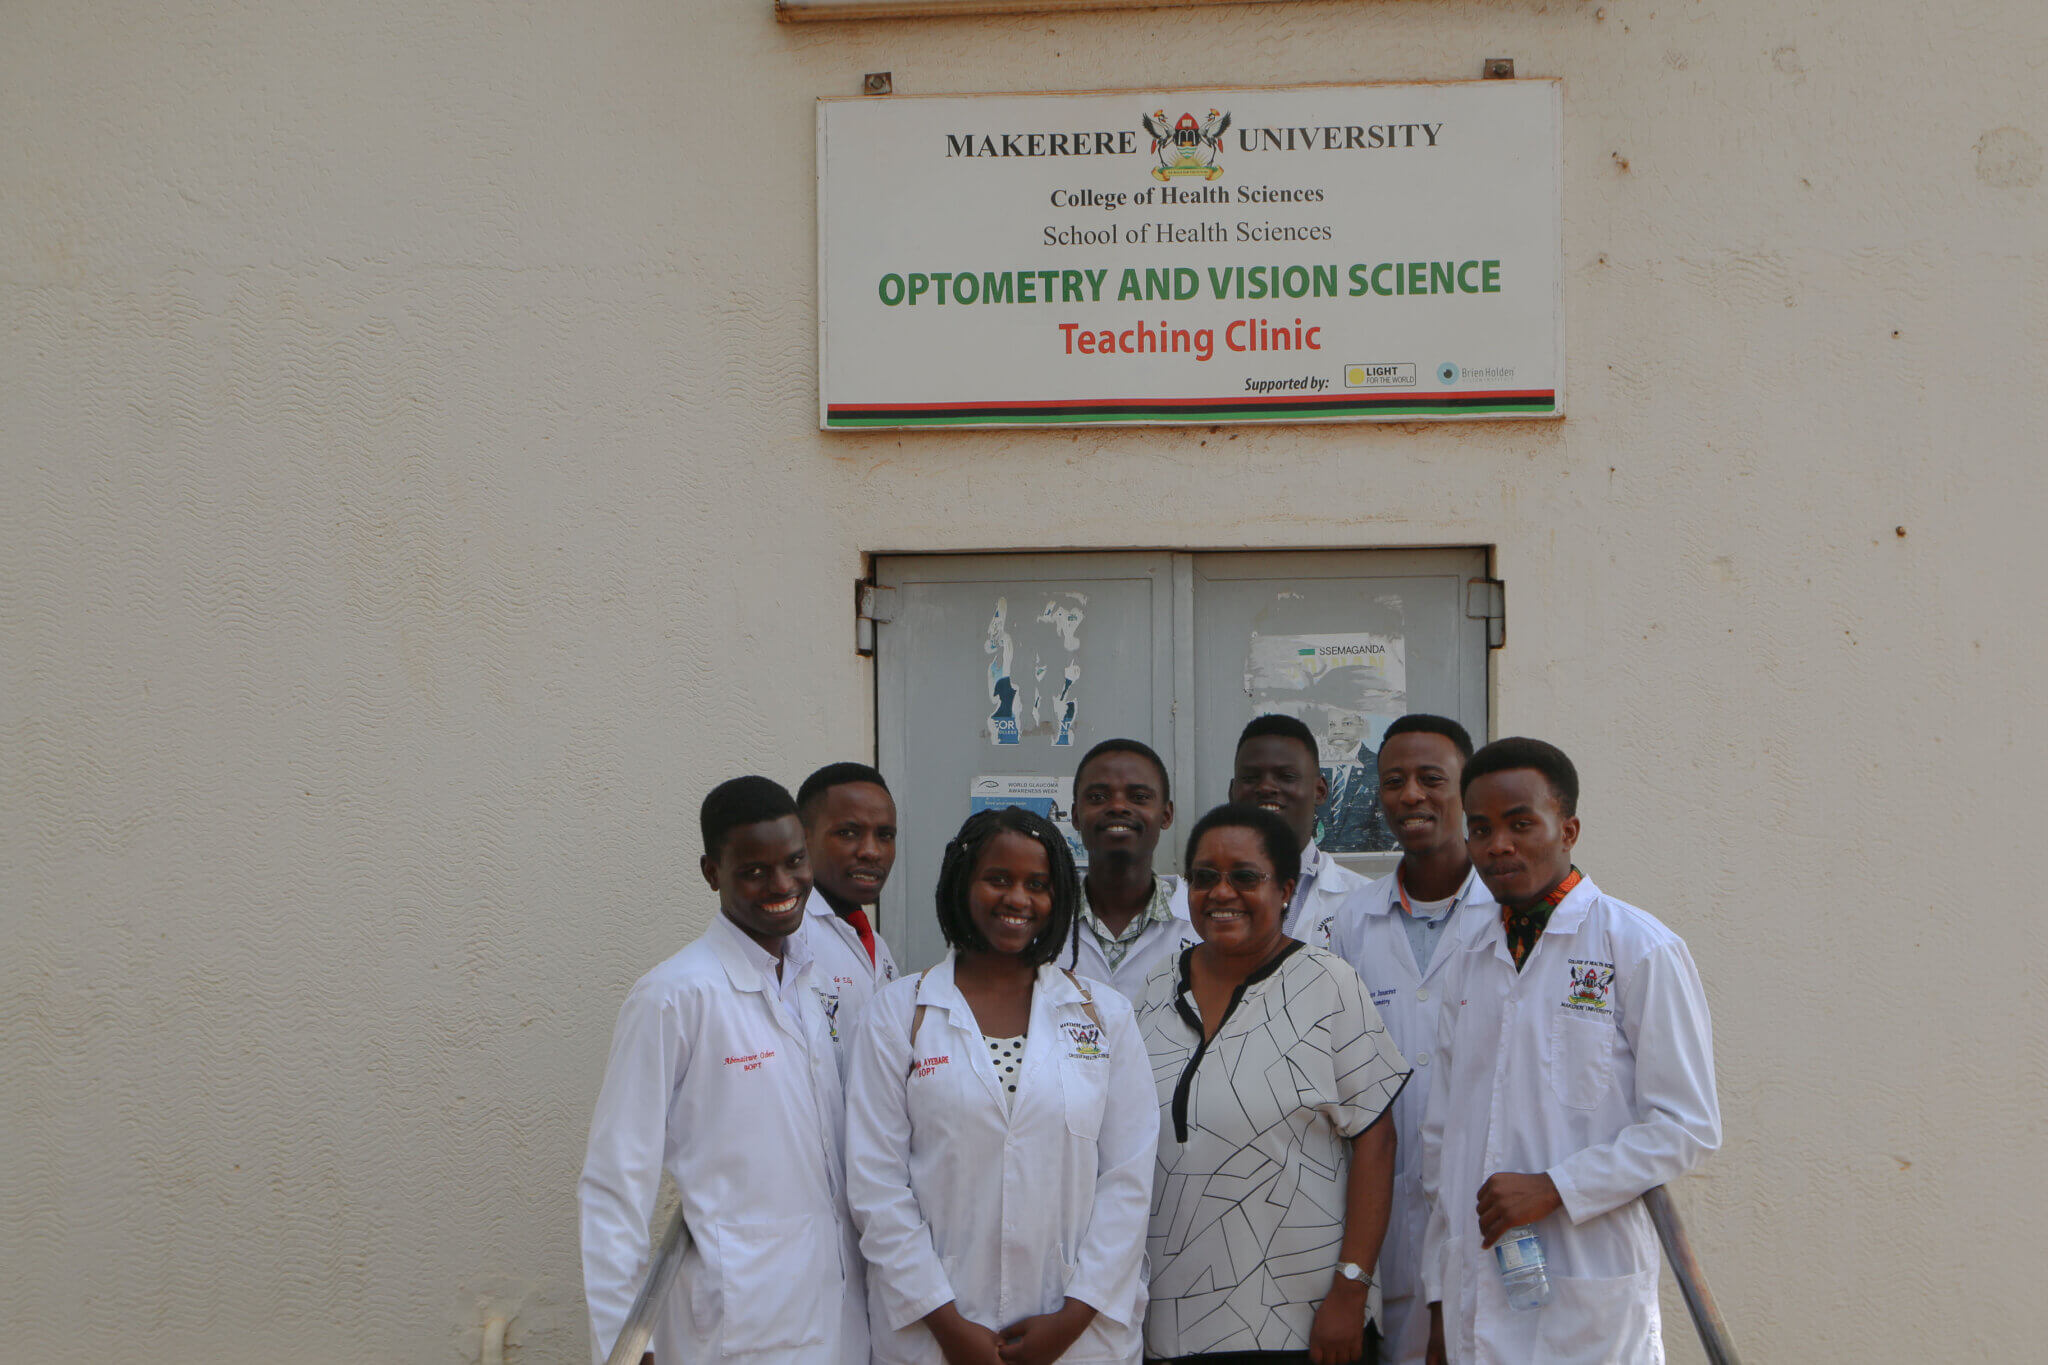 Lehrklinik der Makerere-Universität für Optometrie und Augenheilkunde in Uganda